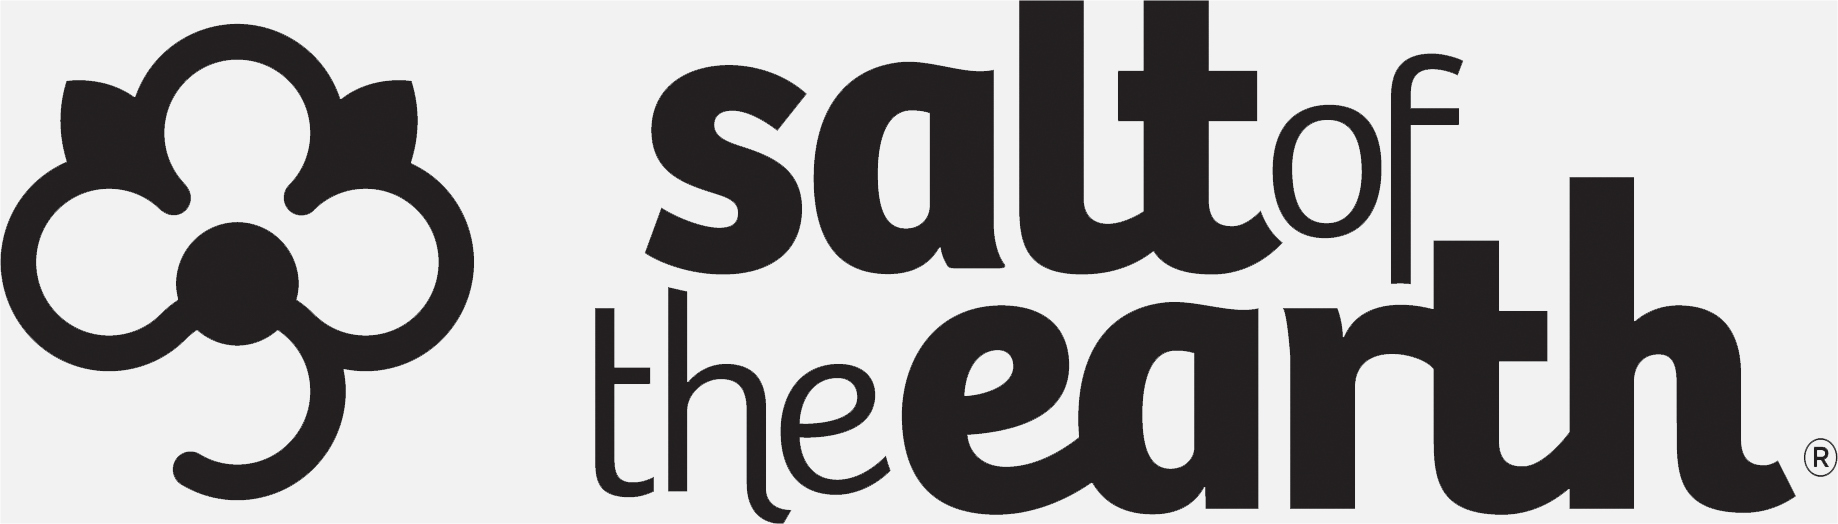 SALT OF THE EARTH